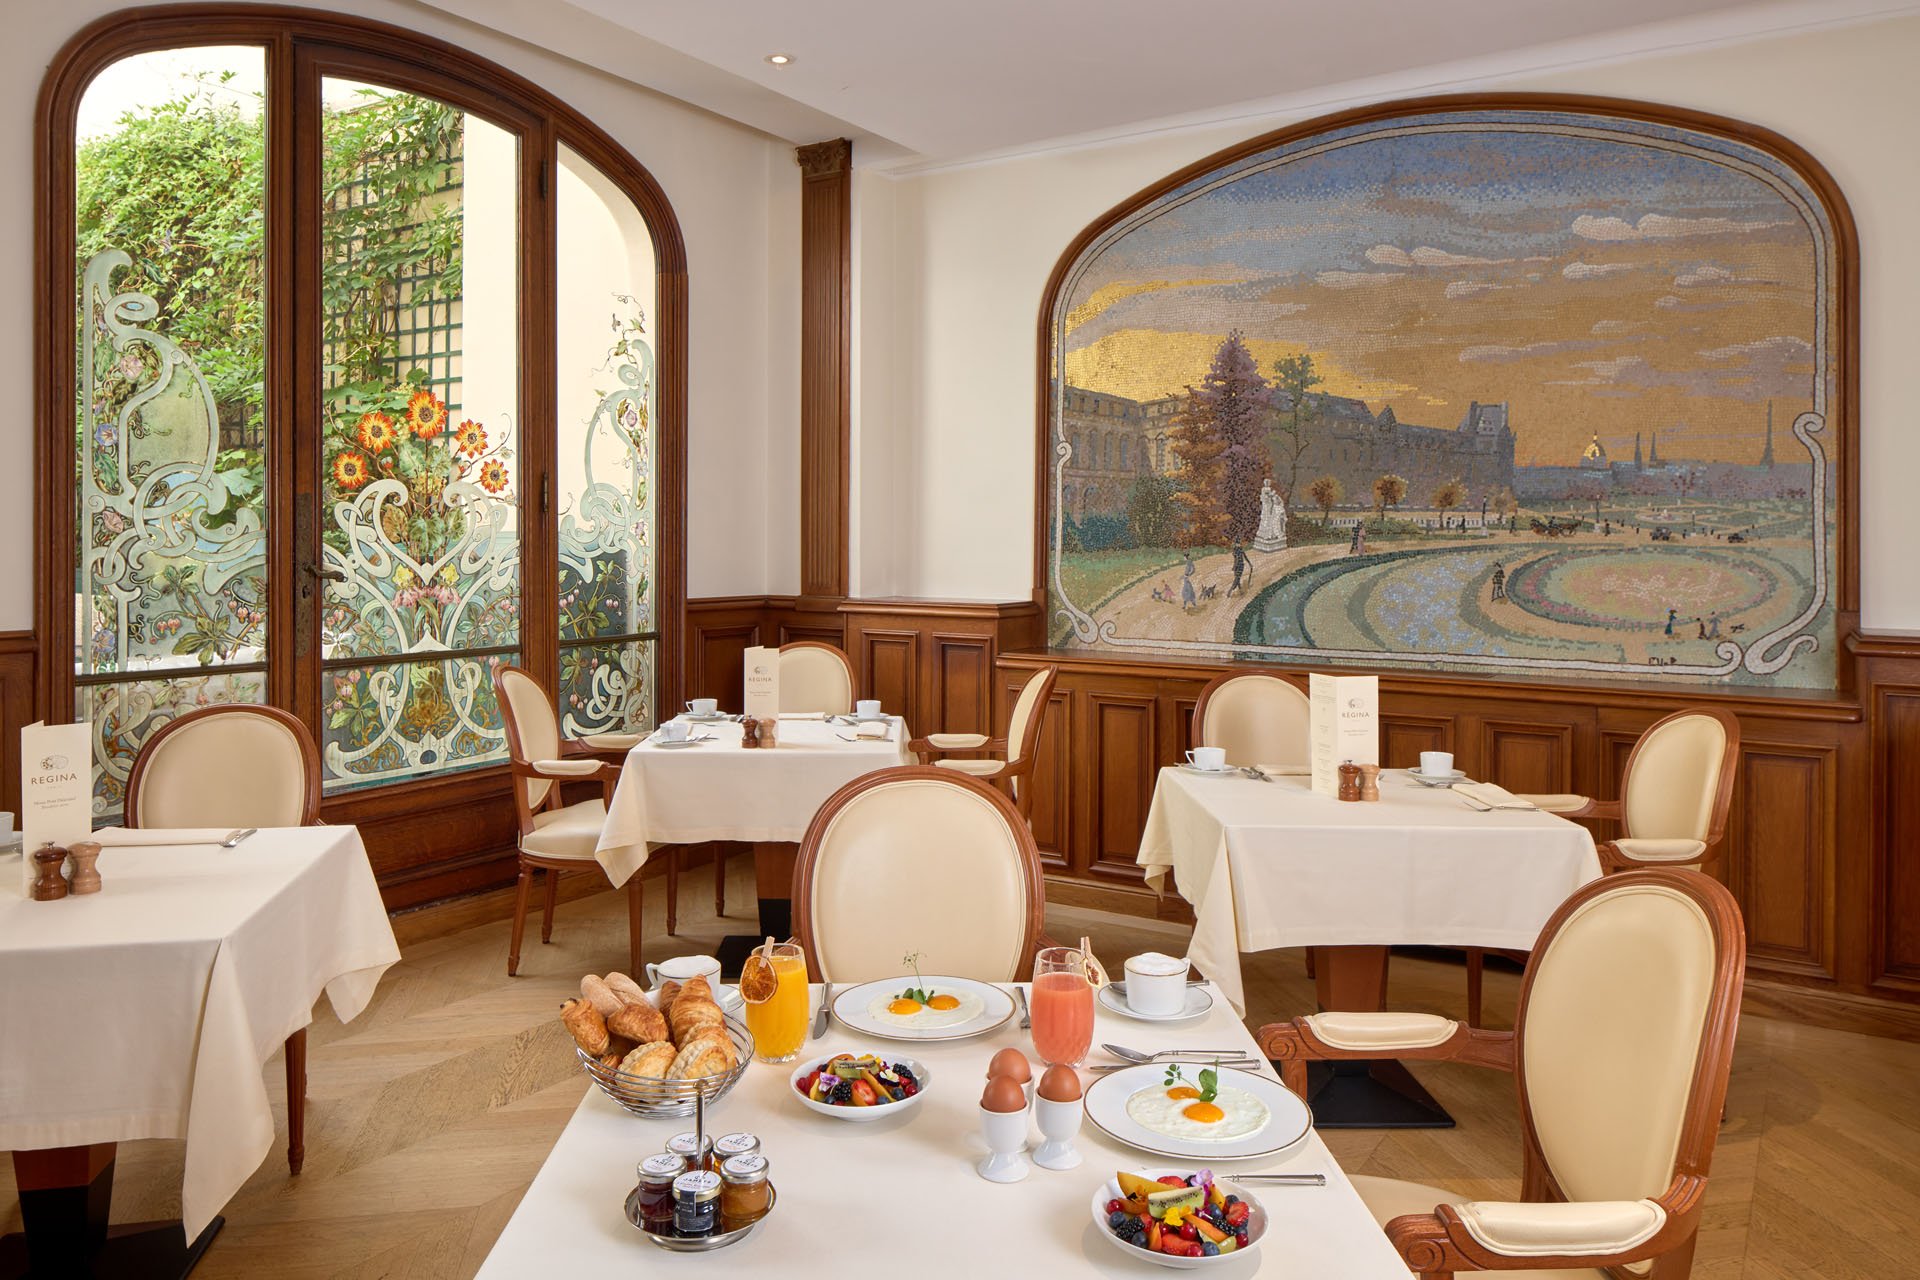 Regina Louvre Hotel - Breakfast